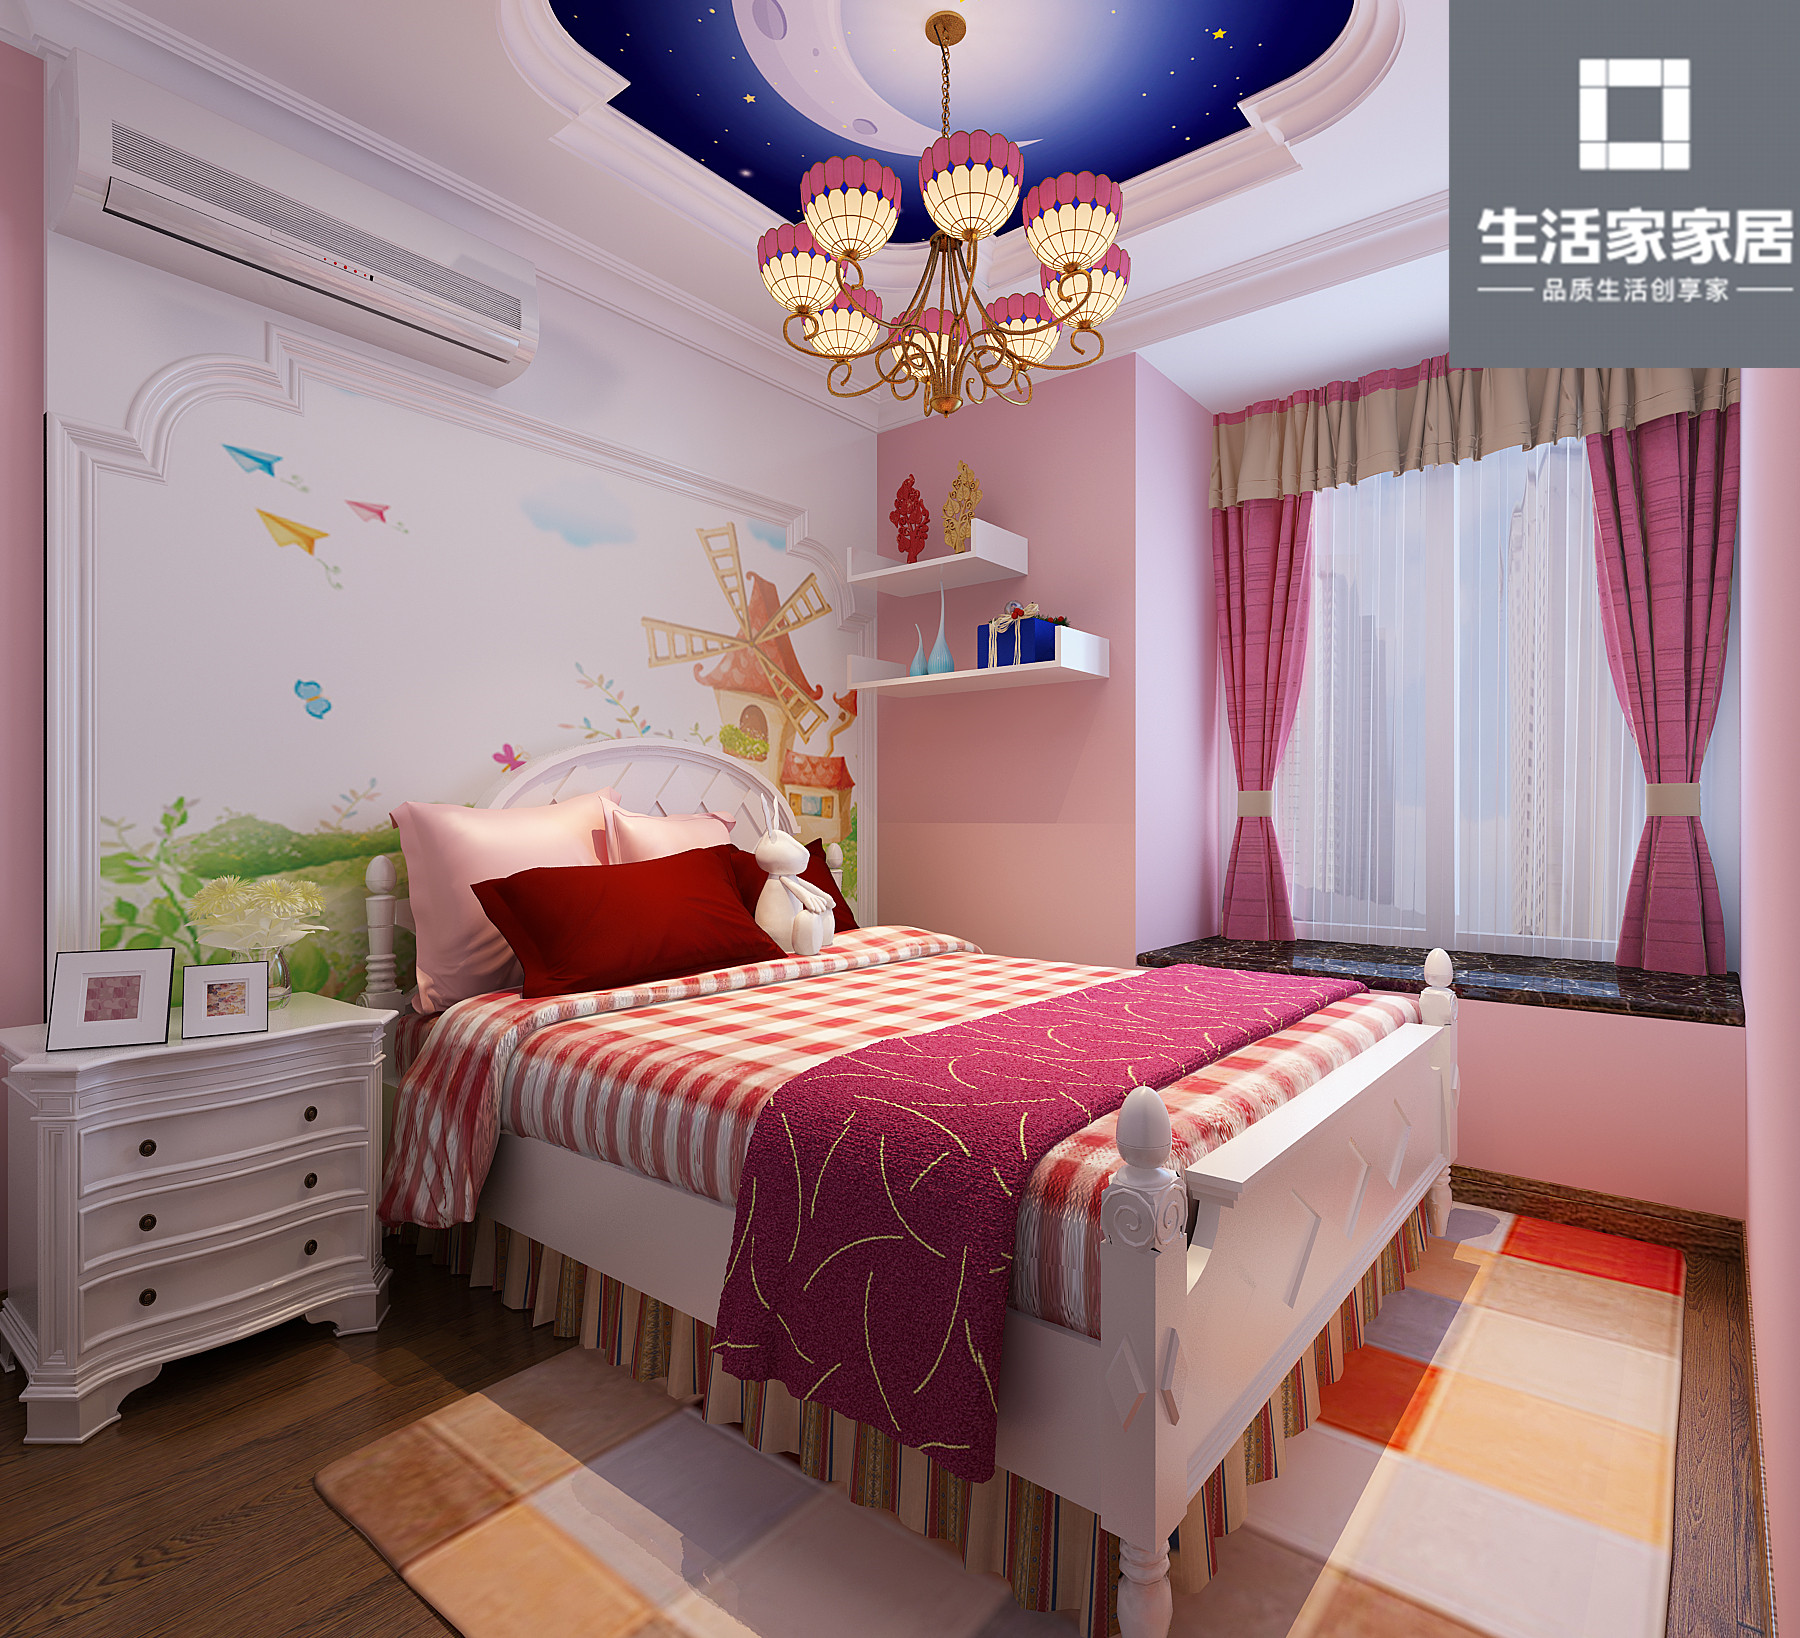 二居 简欧 三口之家 卧室图片来自武汉生活家在观澜国际78平两室两厅简欧风格的分享